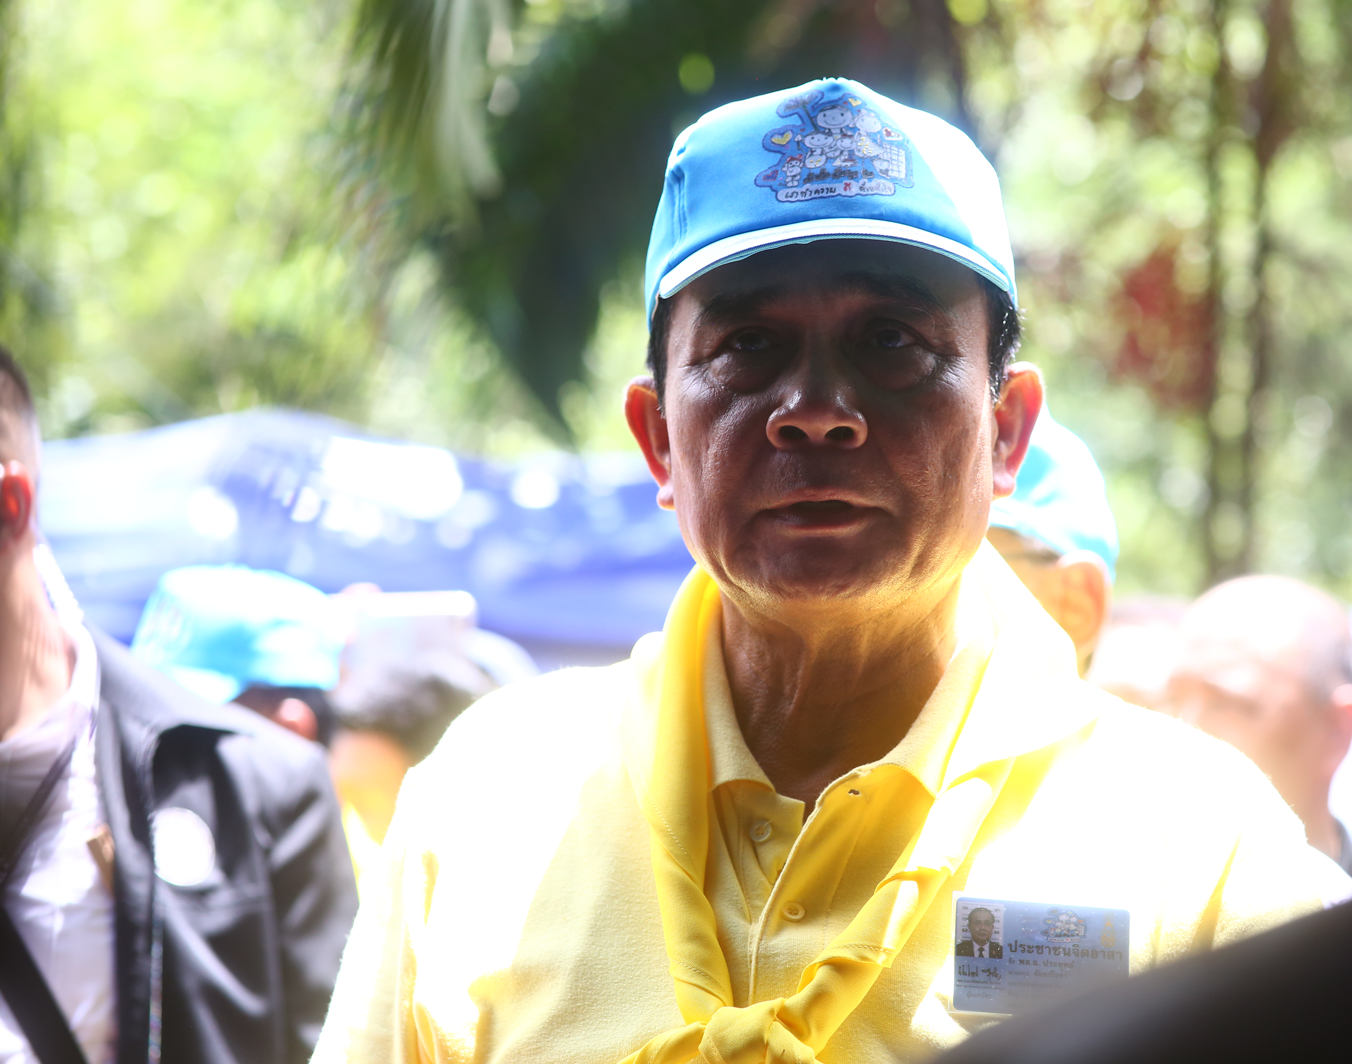 Le Premier Ministre a remercié les sauveteurs et l'ensemble des personnes impliquées dans les opérations visant à retrouver et évacuer les 13 personnes coincées dans la grotte de Tham Luang, dans le nord de la Thaïlande